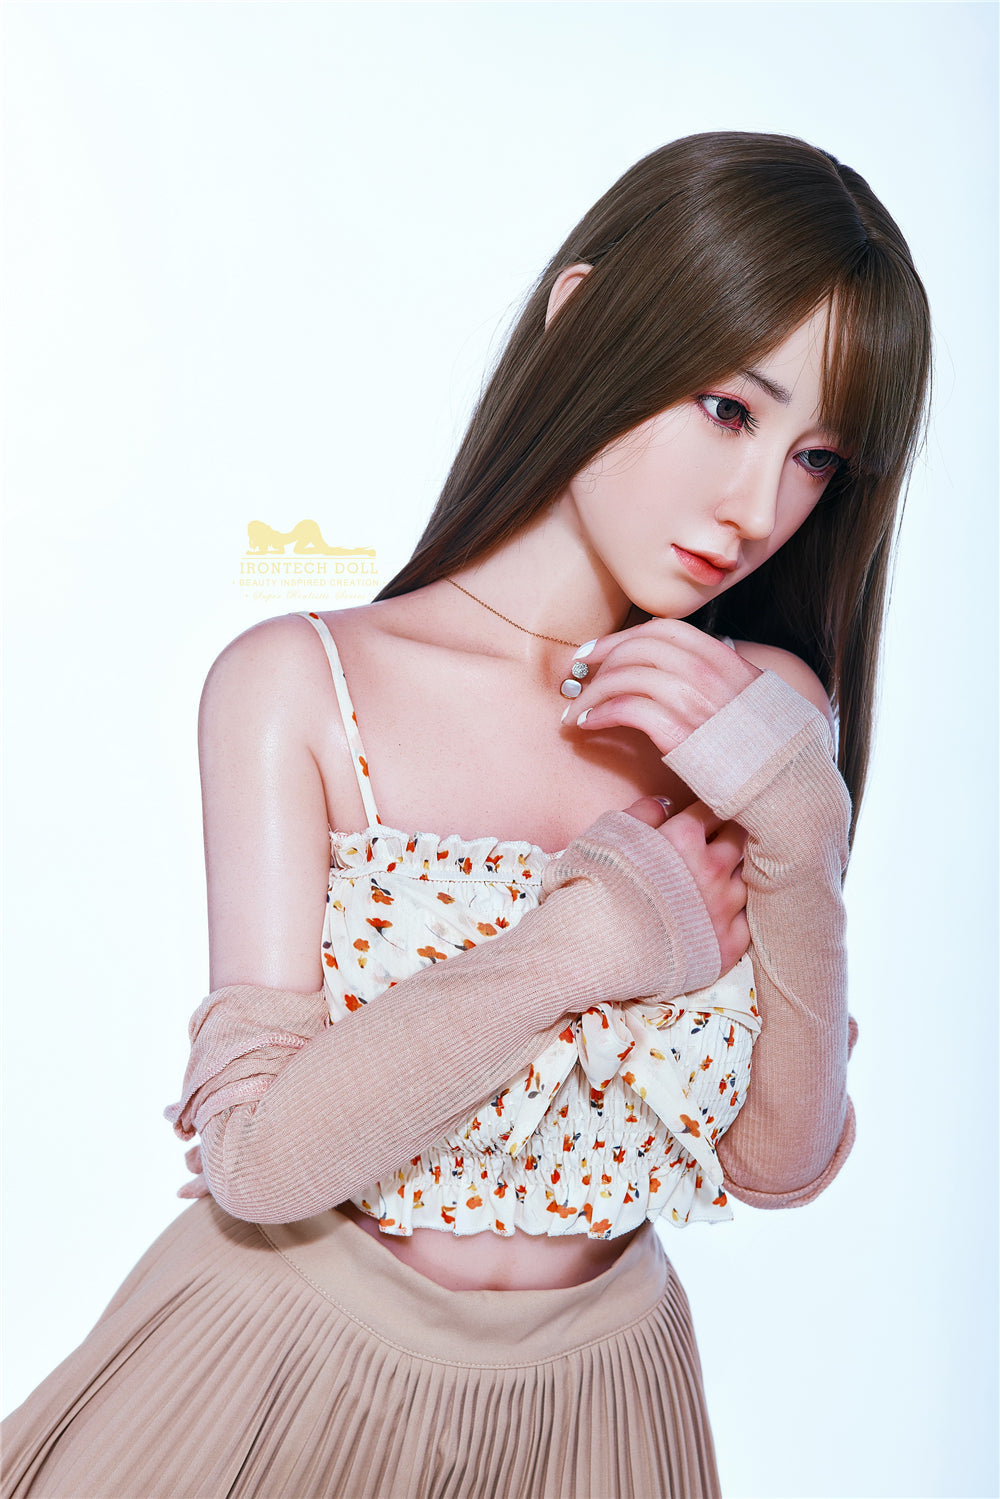 Irontech Doll 153 cm Silicone - Amalia | Sex Dolls SG